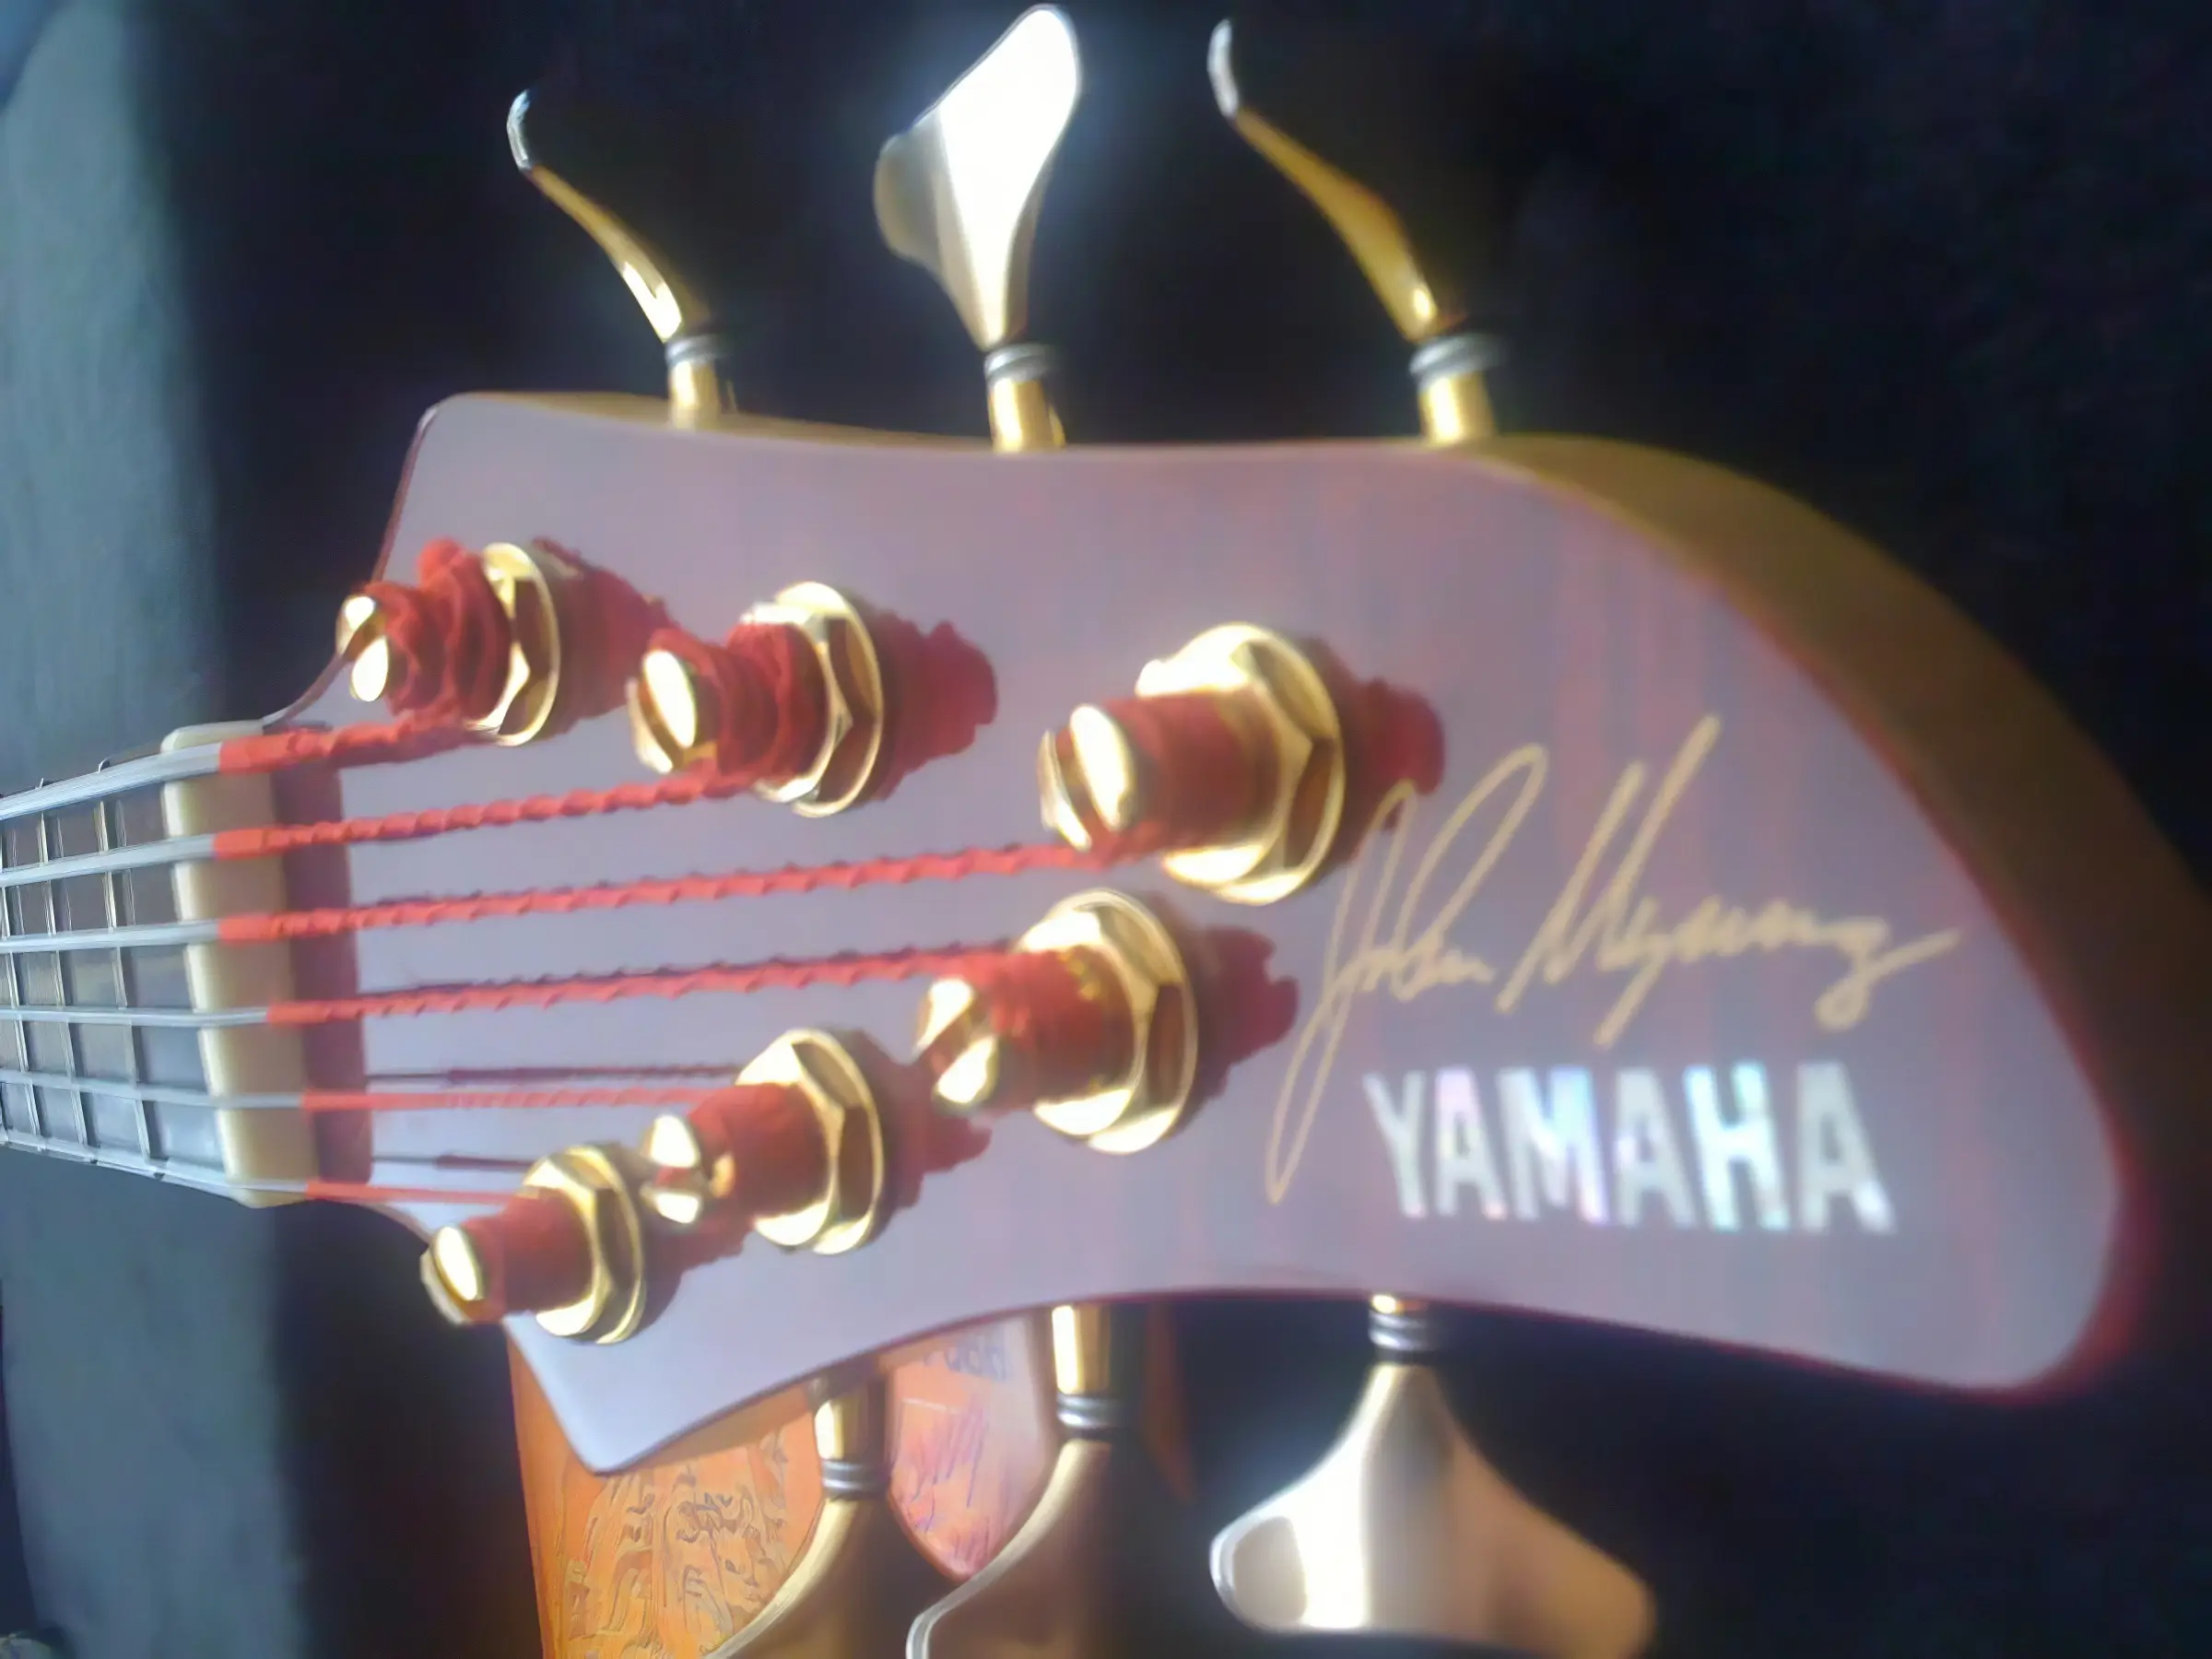 gitara yamaha